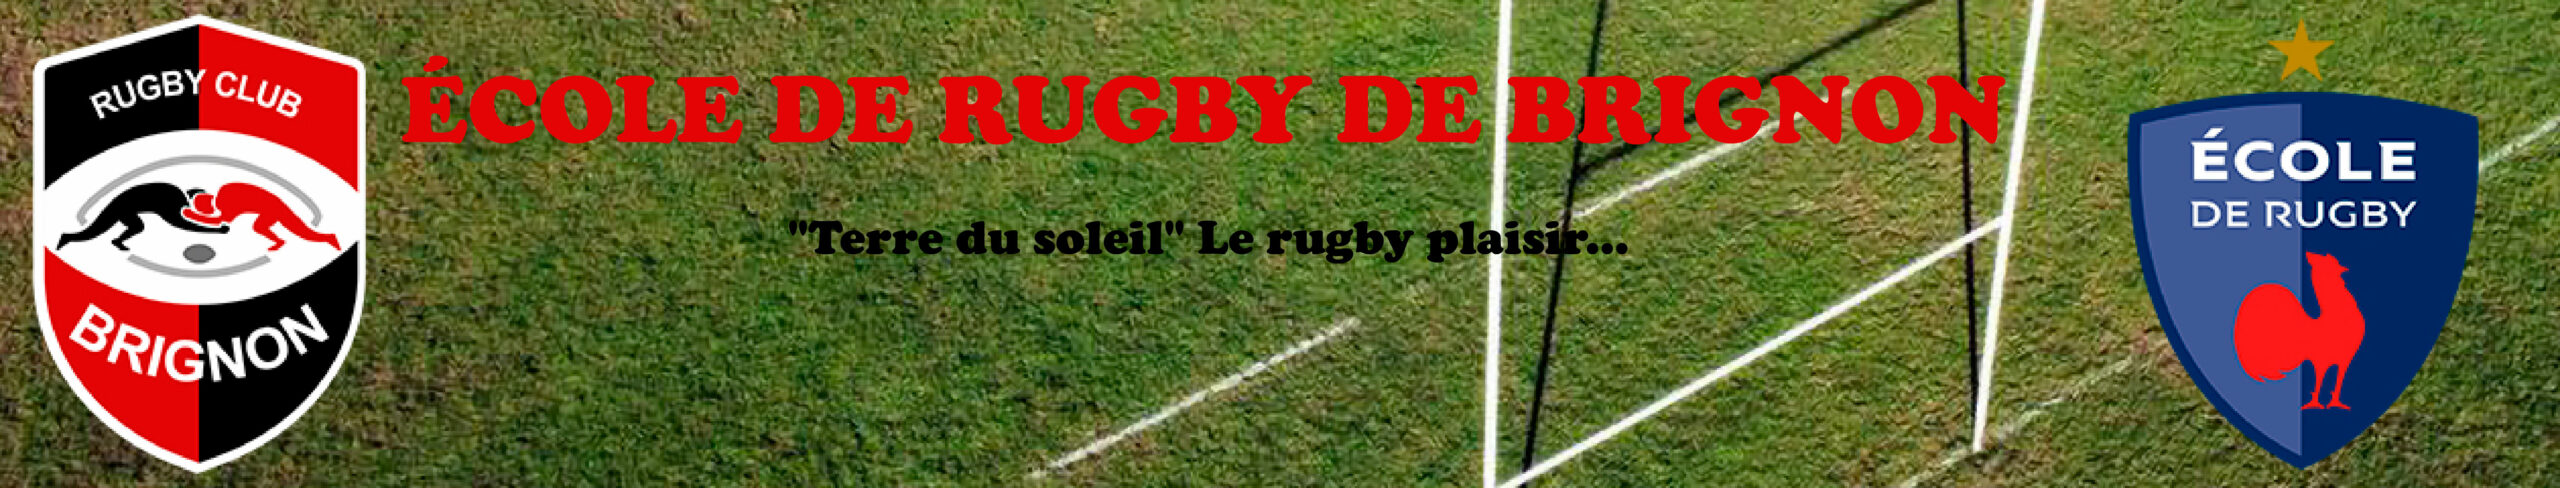 Ecole de Rugby de Brignon